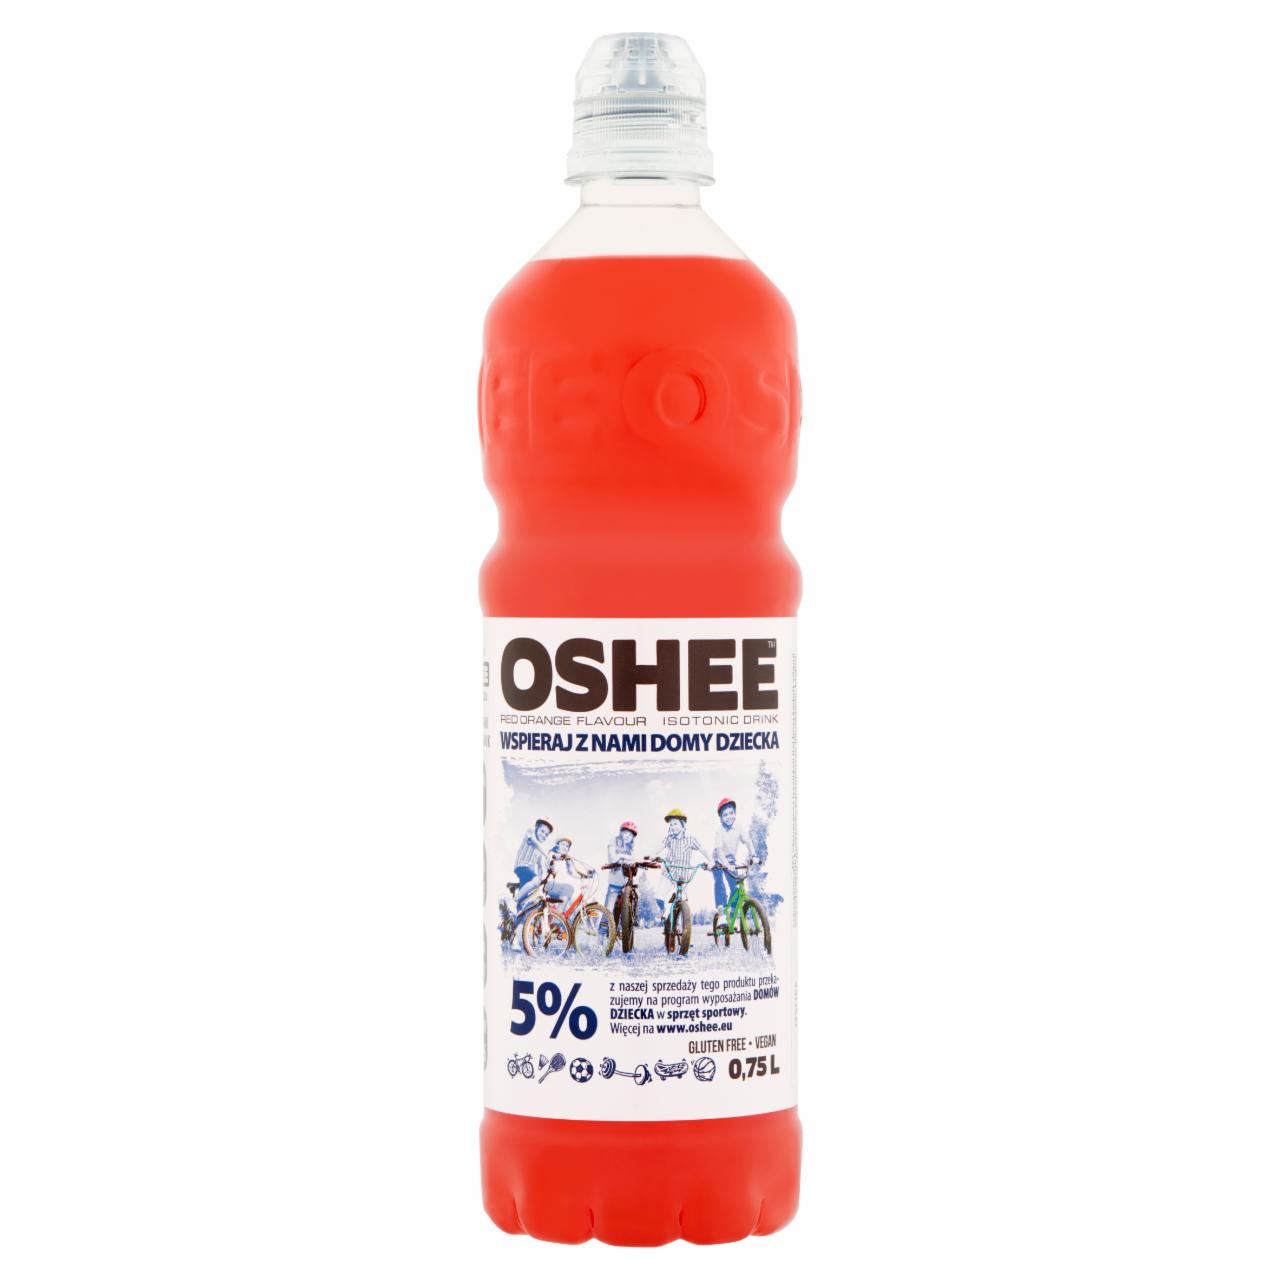 Képek - Oshee szénsavmentes vérnarancs ízesítésű ital hozzáadott vitaminokkal 0,75 l